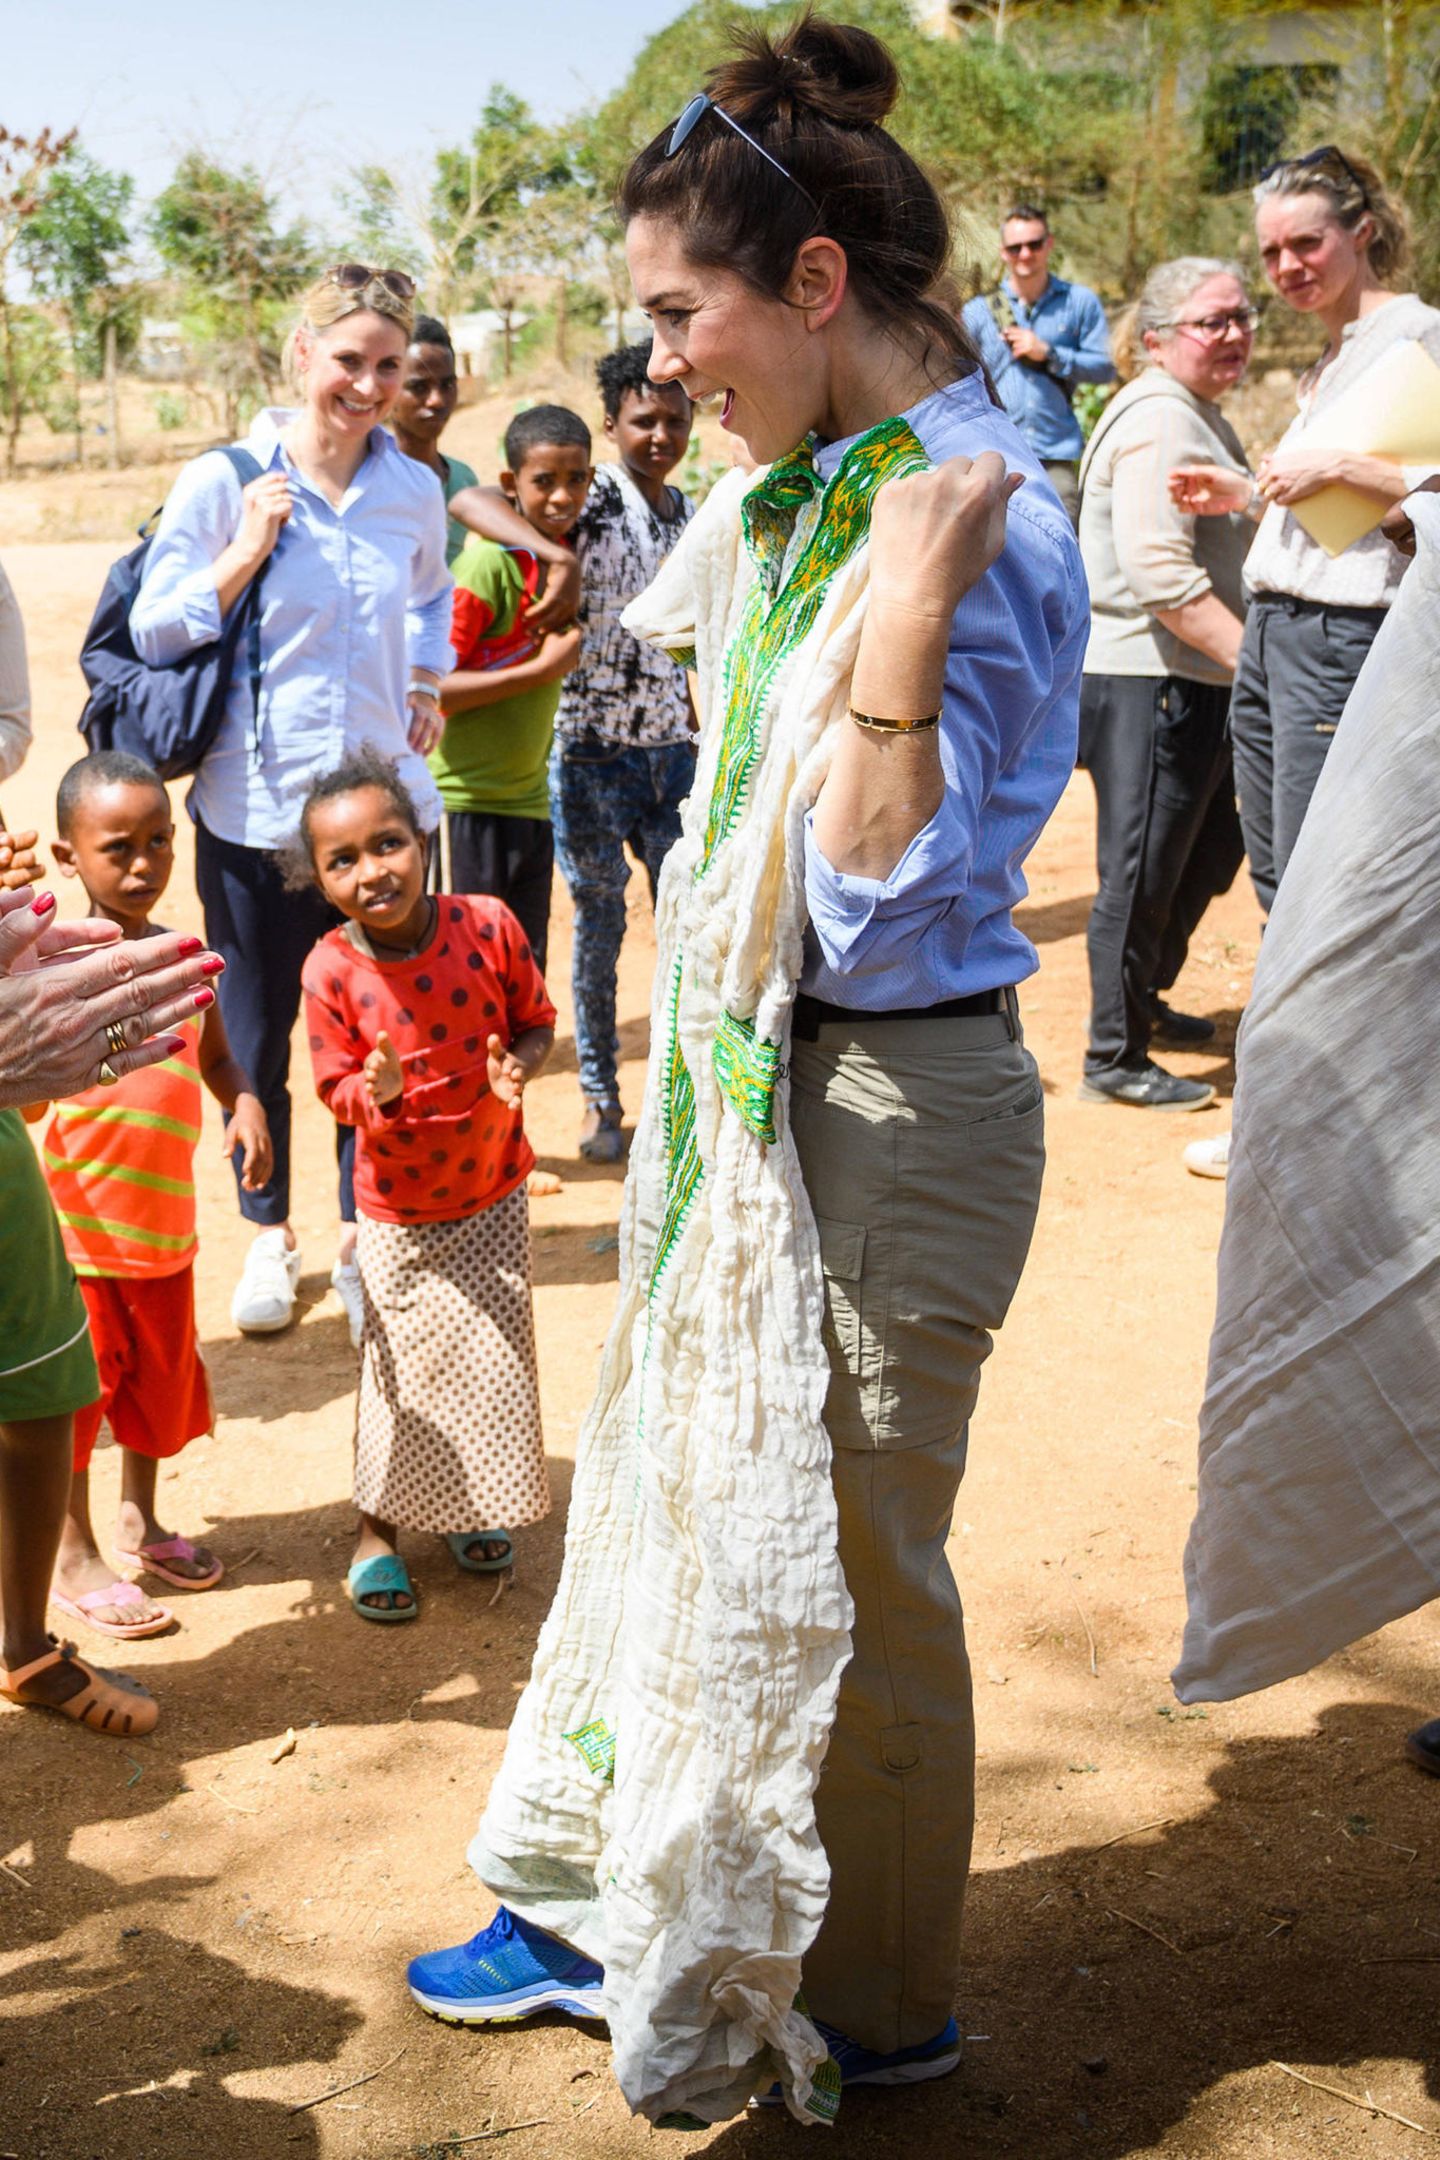 "Oder soll ich lieber dieses Kleid tragen?", scheint Prinzessin Mary die anwesenden Kinder im Flüchtlingscamp zu fragen. Die traditionelle Tracht in Weiß und Grün hätte ihr sicherlich gut gestanden.